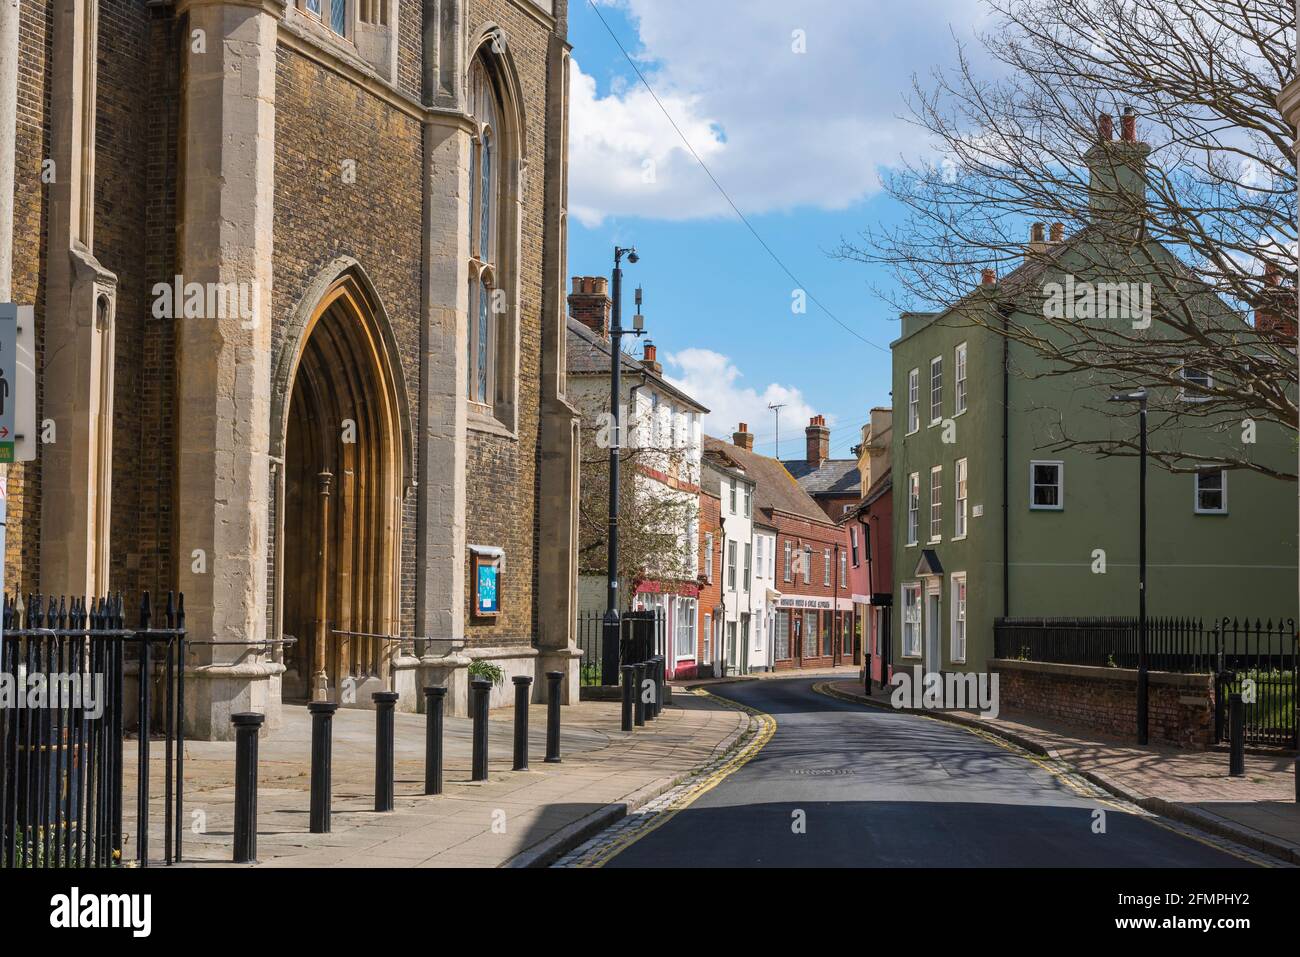 Harwich Essex, vista de la entrada a la Iglesia de San Nicolás y la propiedad de época que bordea Church Street en la zona del casco antiguo de Harwich, Essex, Inglaterra, Reino Unido Foto de stock